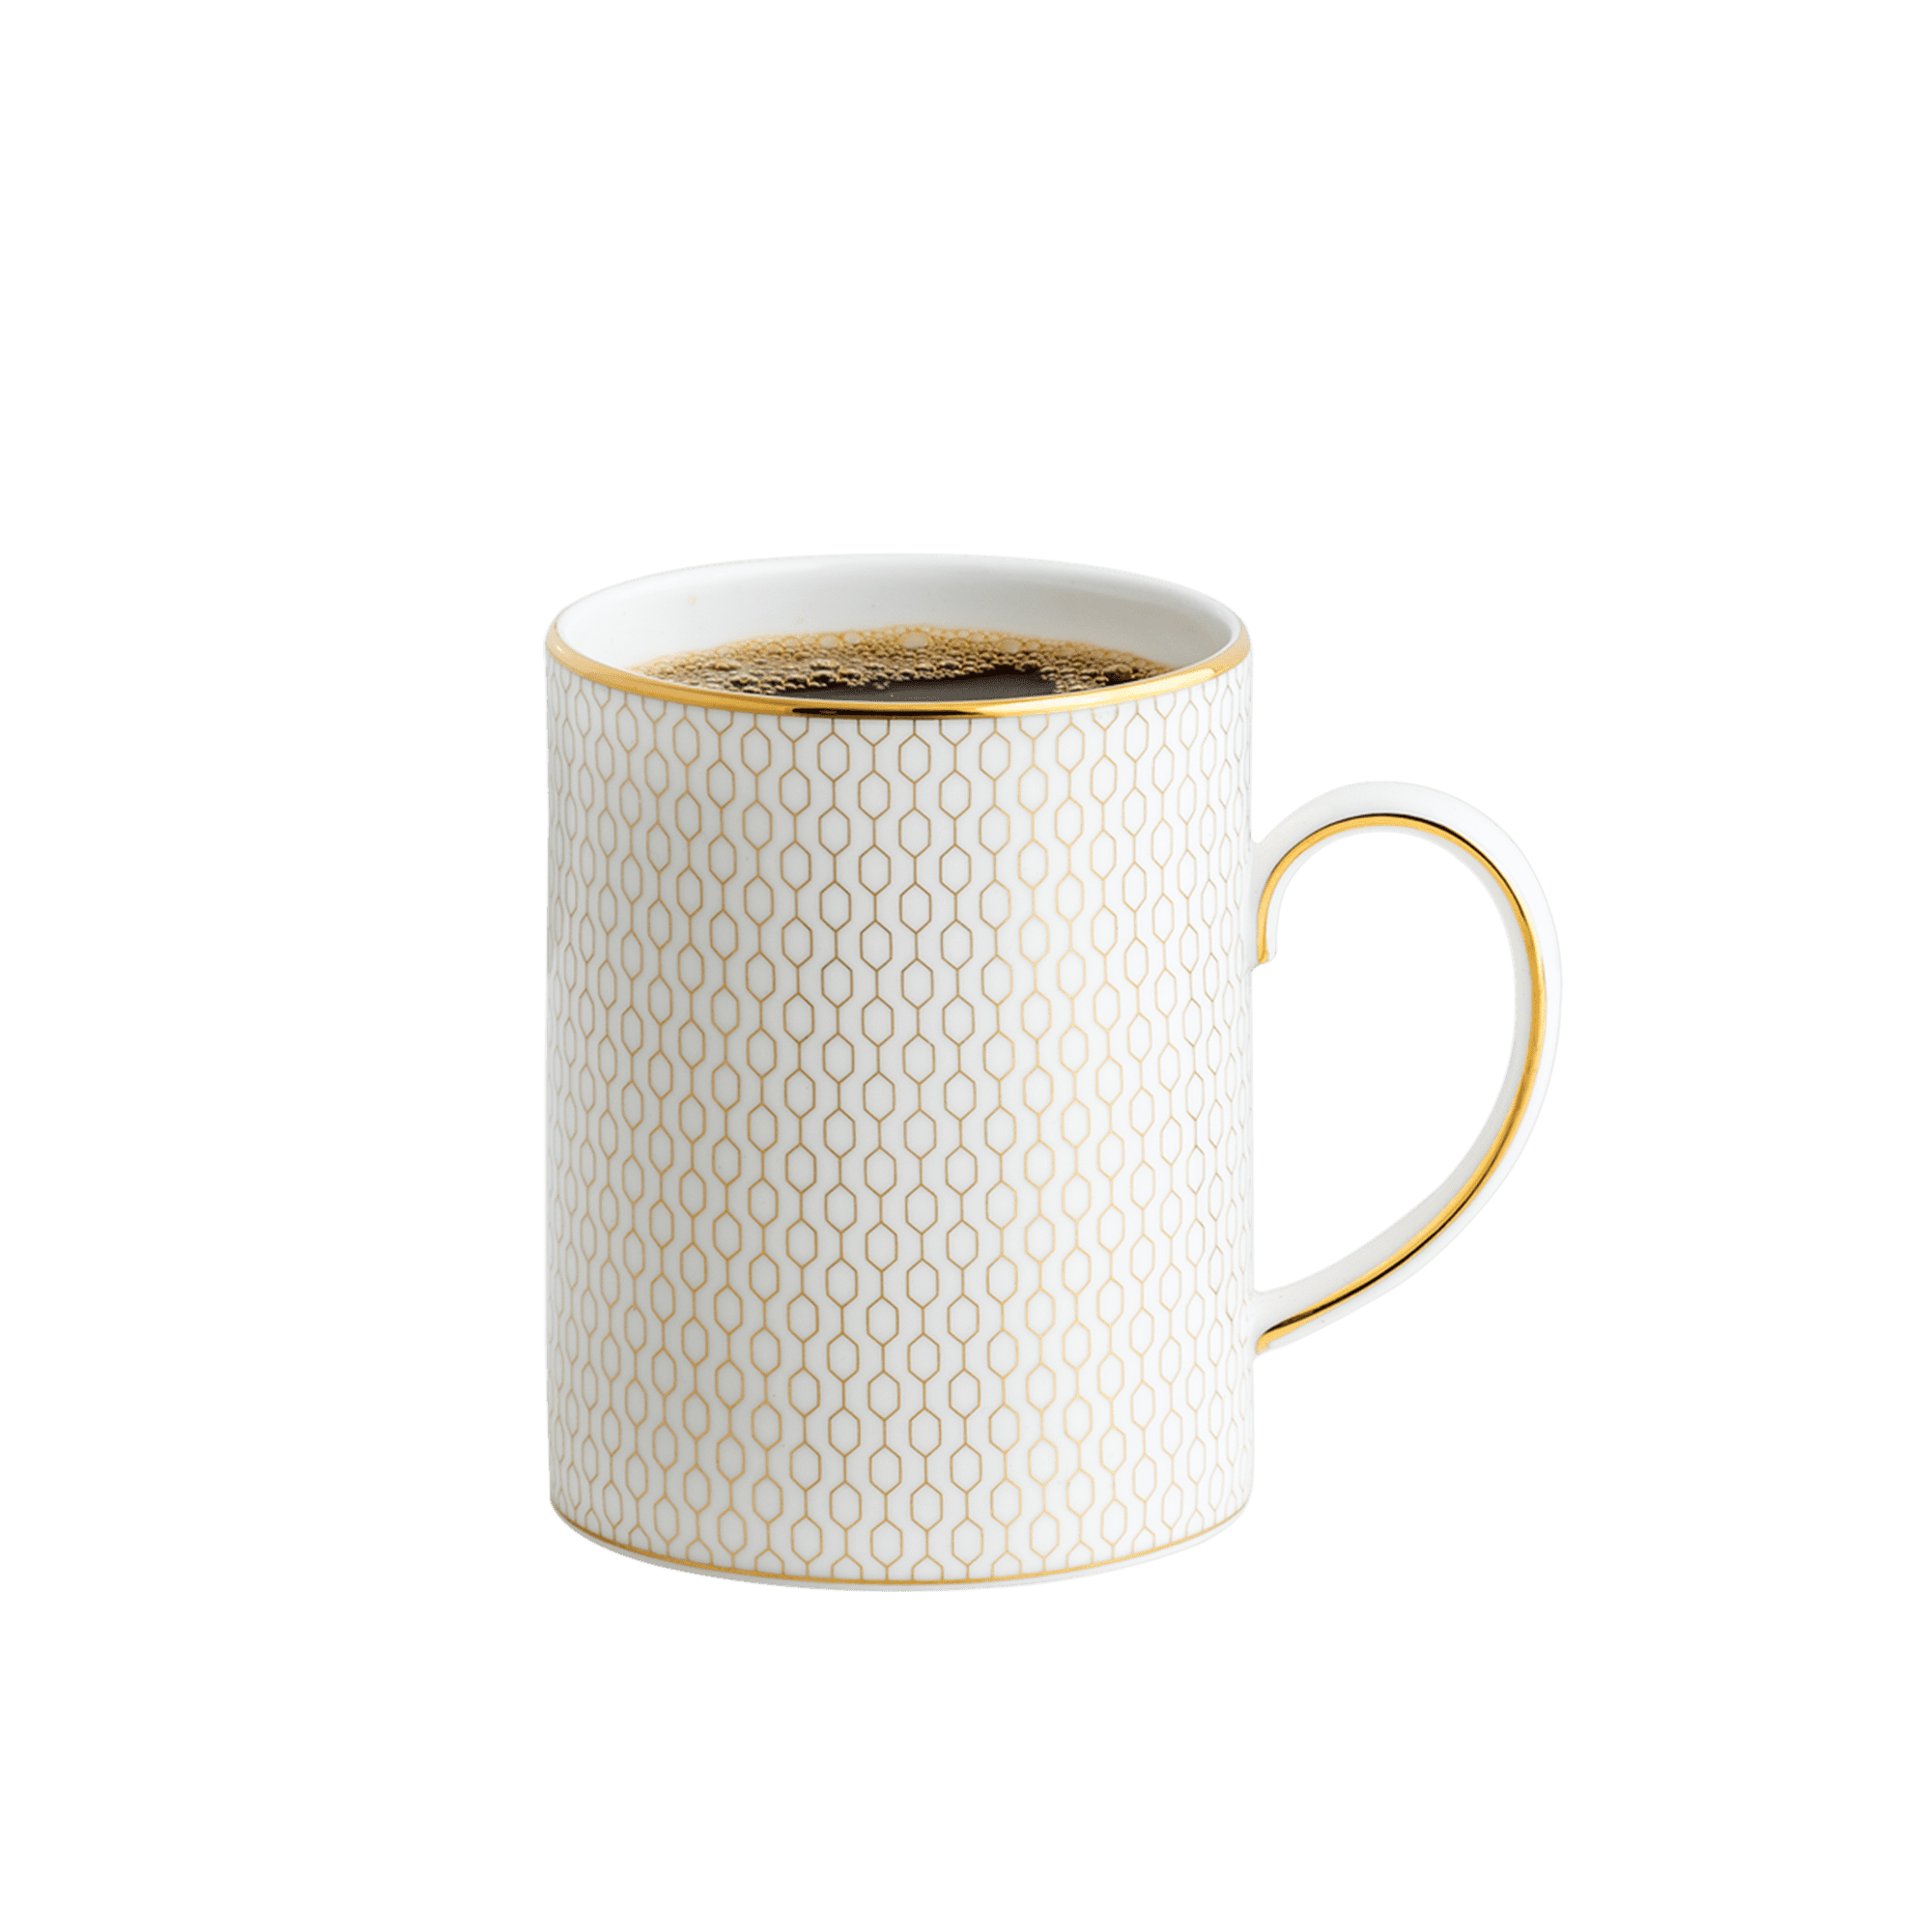 Gio Gold Coffee Mug